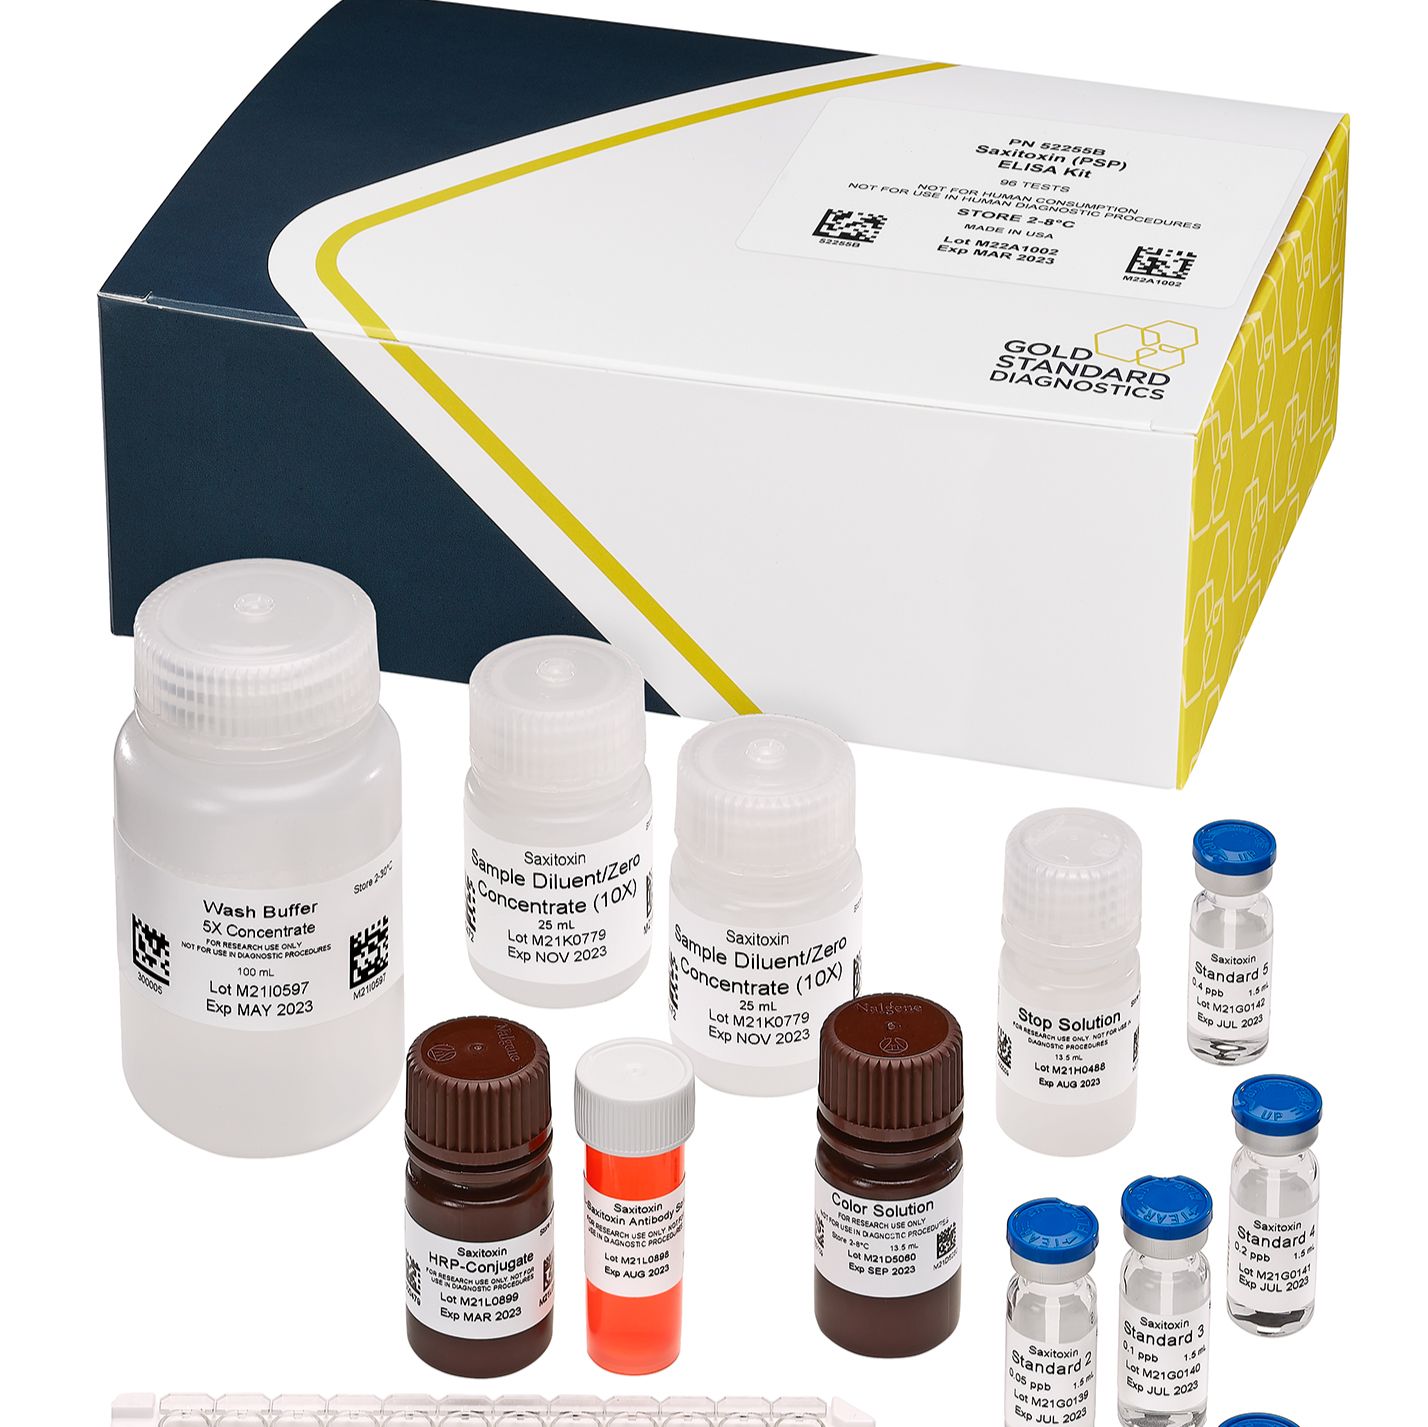 麻痹性贝类毒素(PSP)检测试剂盒